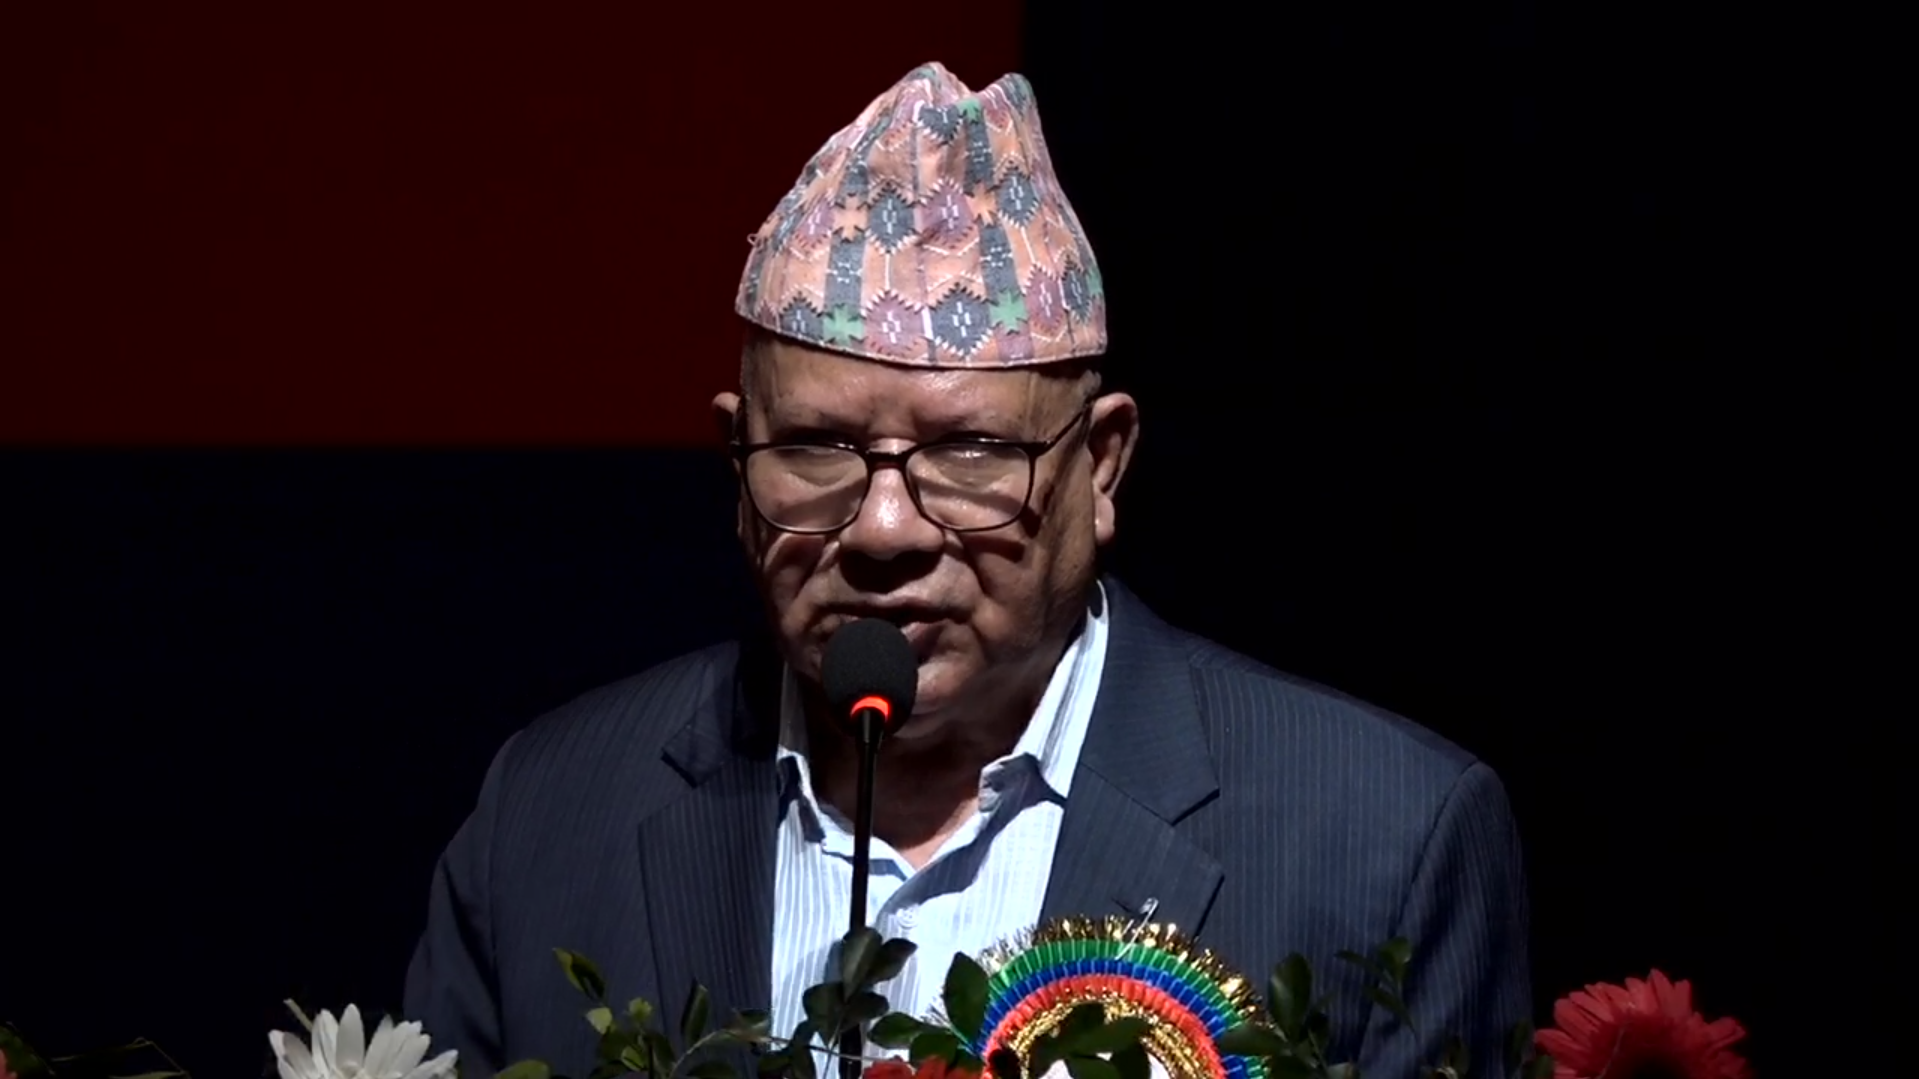 मैंले आफैले दशौं पटक फोन गर्दा पनि ओलीजी महाधिवेशनमा आउनुभएन : अध्यक्ष नेपाल